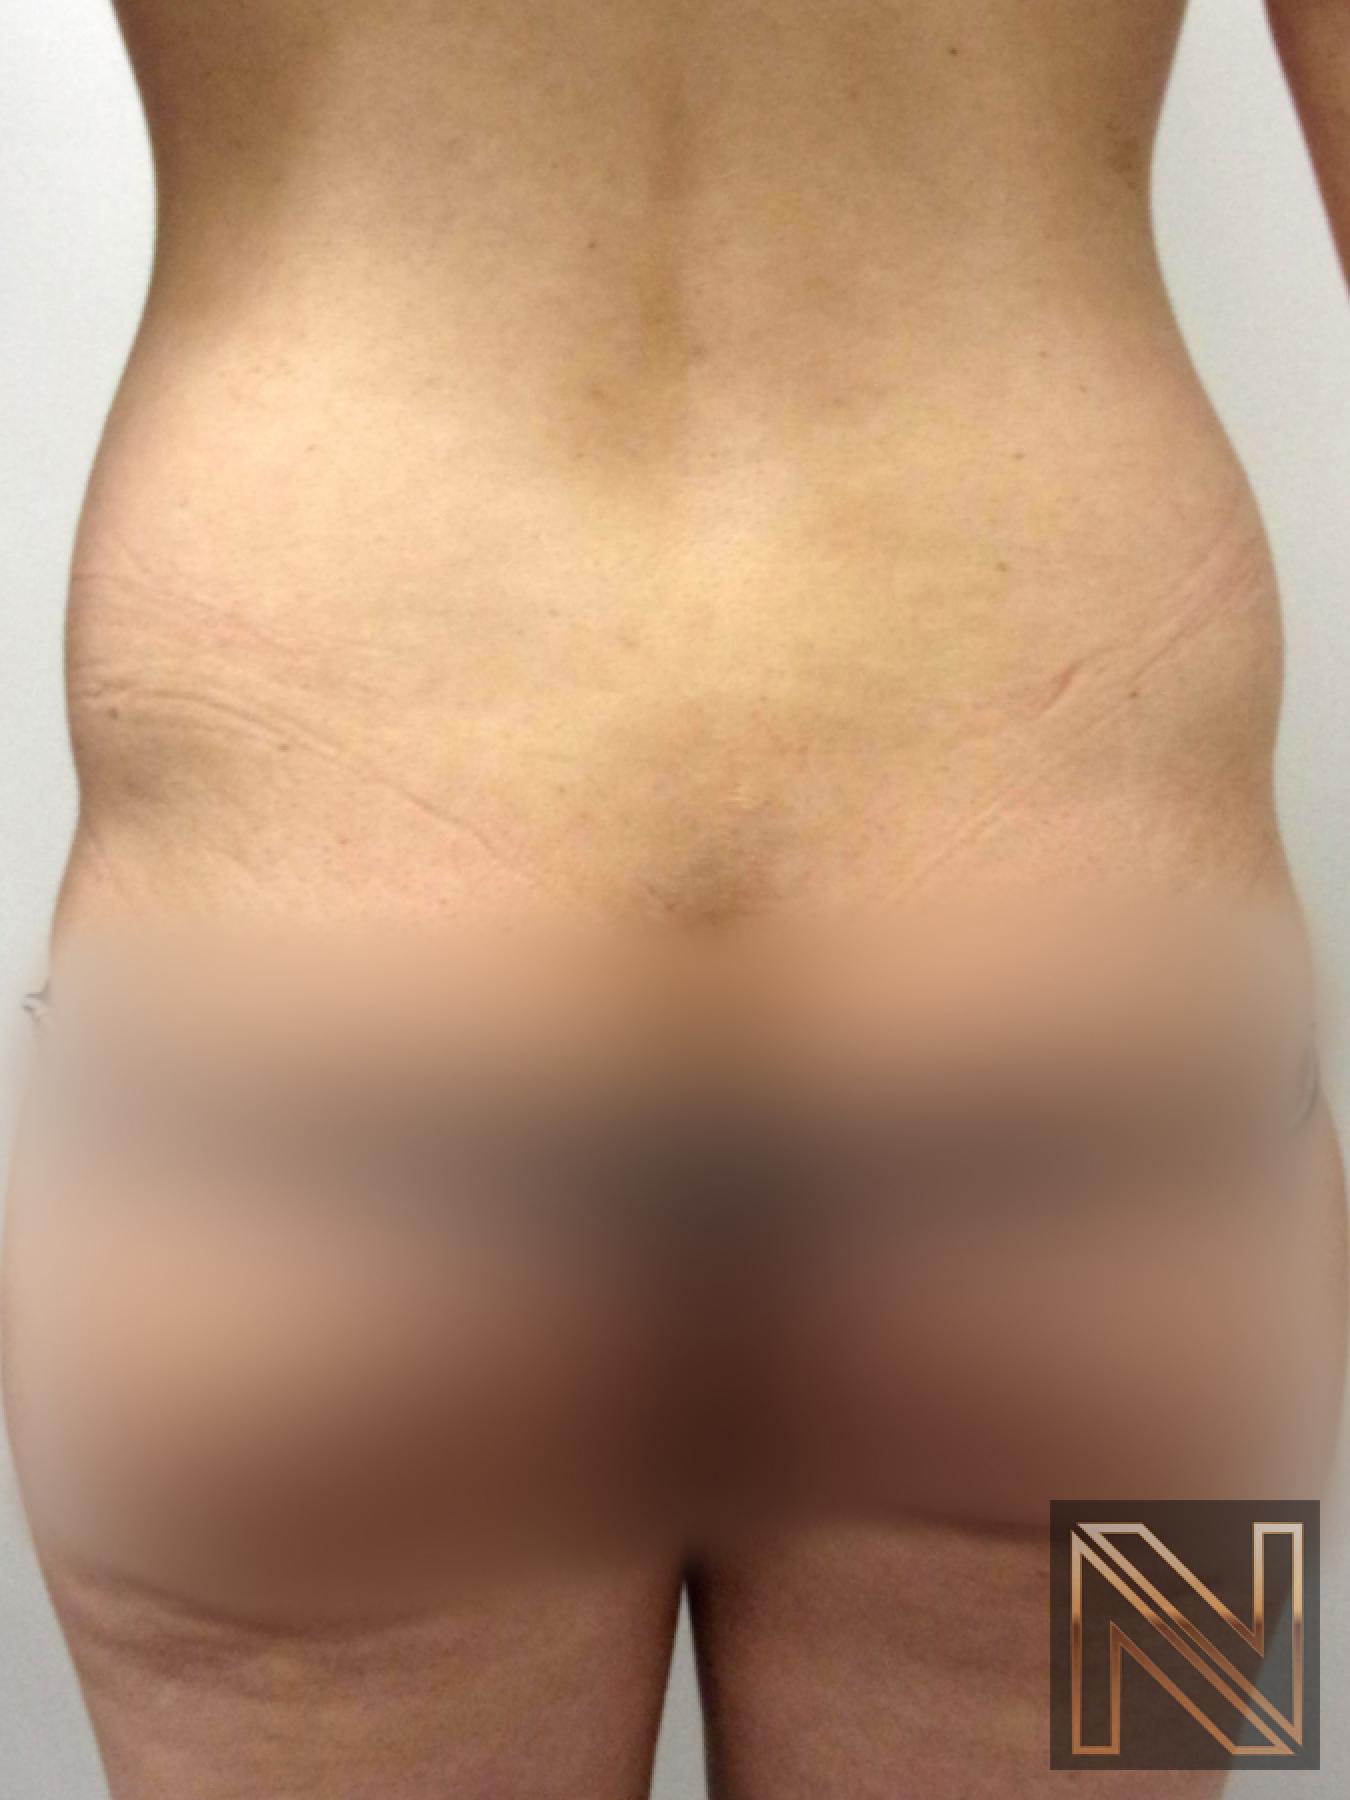 Liposuction: Patient 22 - Before 1